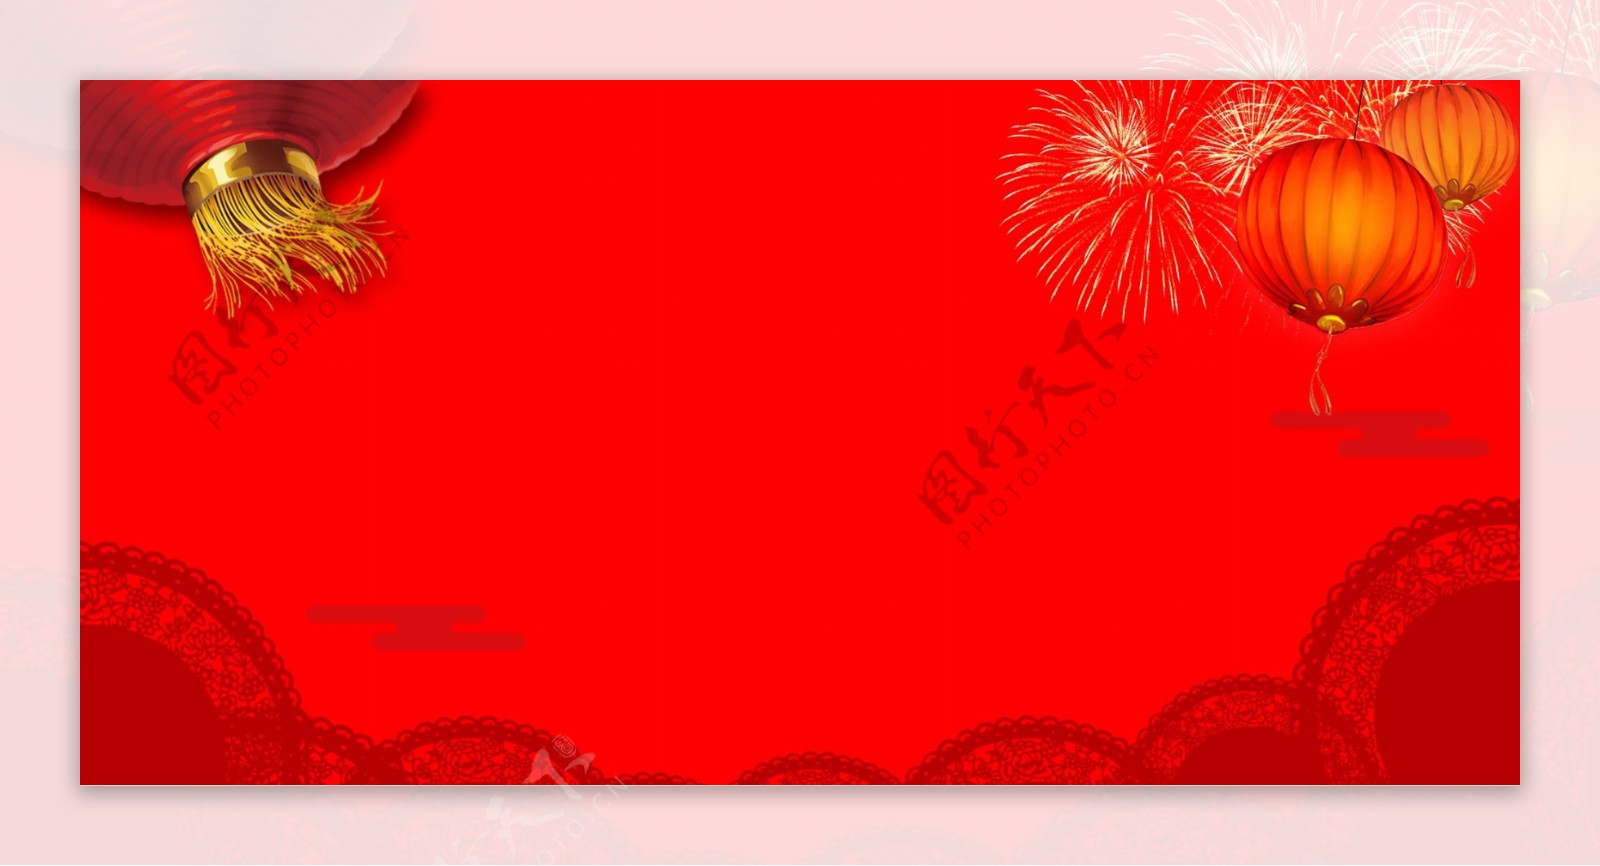 手绘中国传统节日新春红色背景